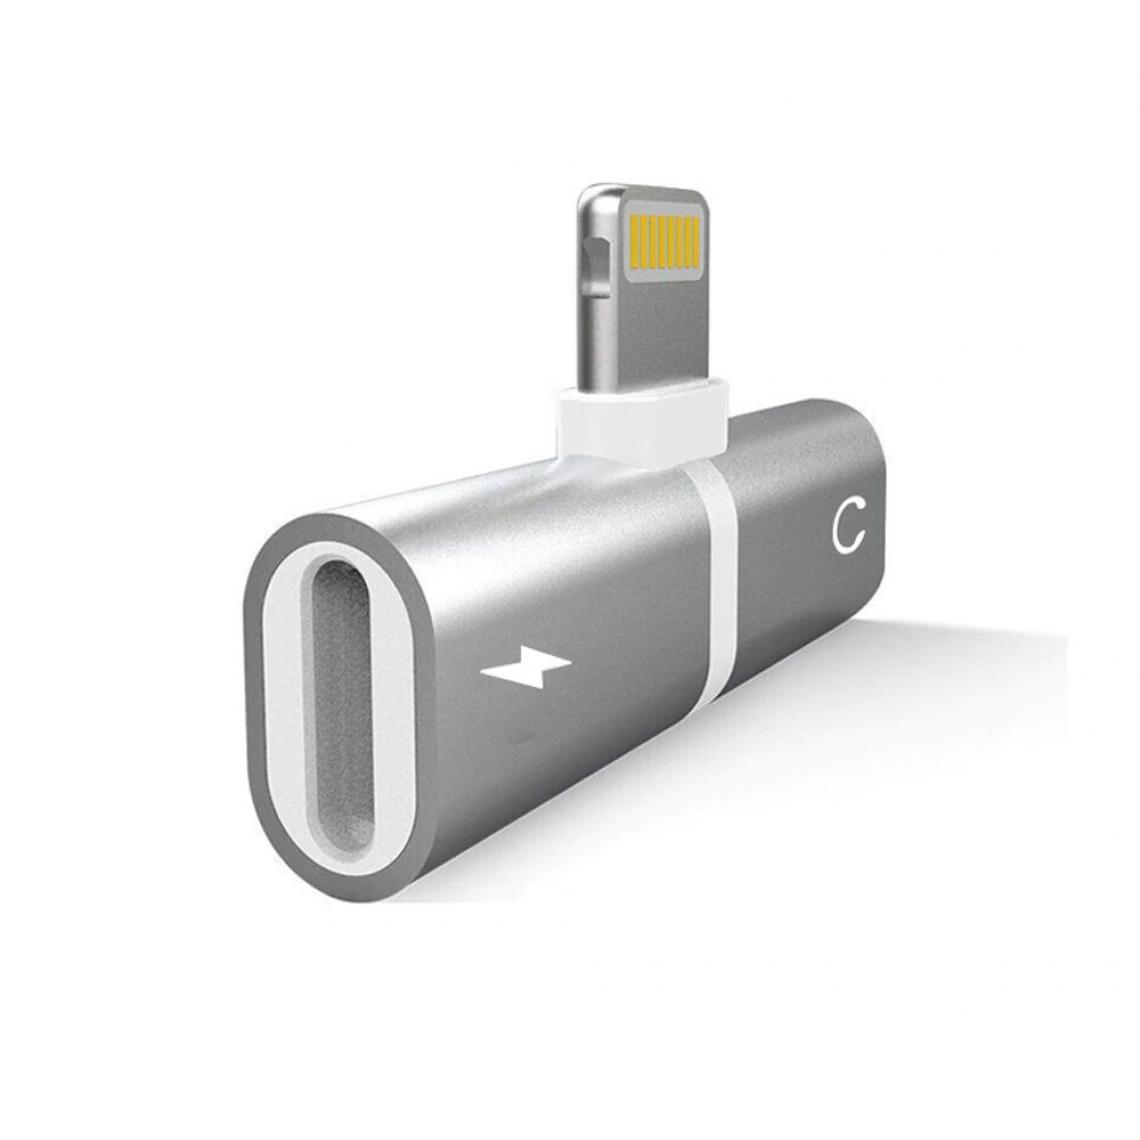 Shot - Mini Adaptateur Lightning/Jack pour IPHONE 11 APPLE Chargeur Ecouteurs 2 en 1 Casque (ARGENT) - Autres accessoires smartphone